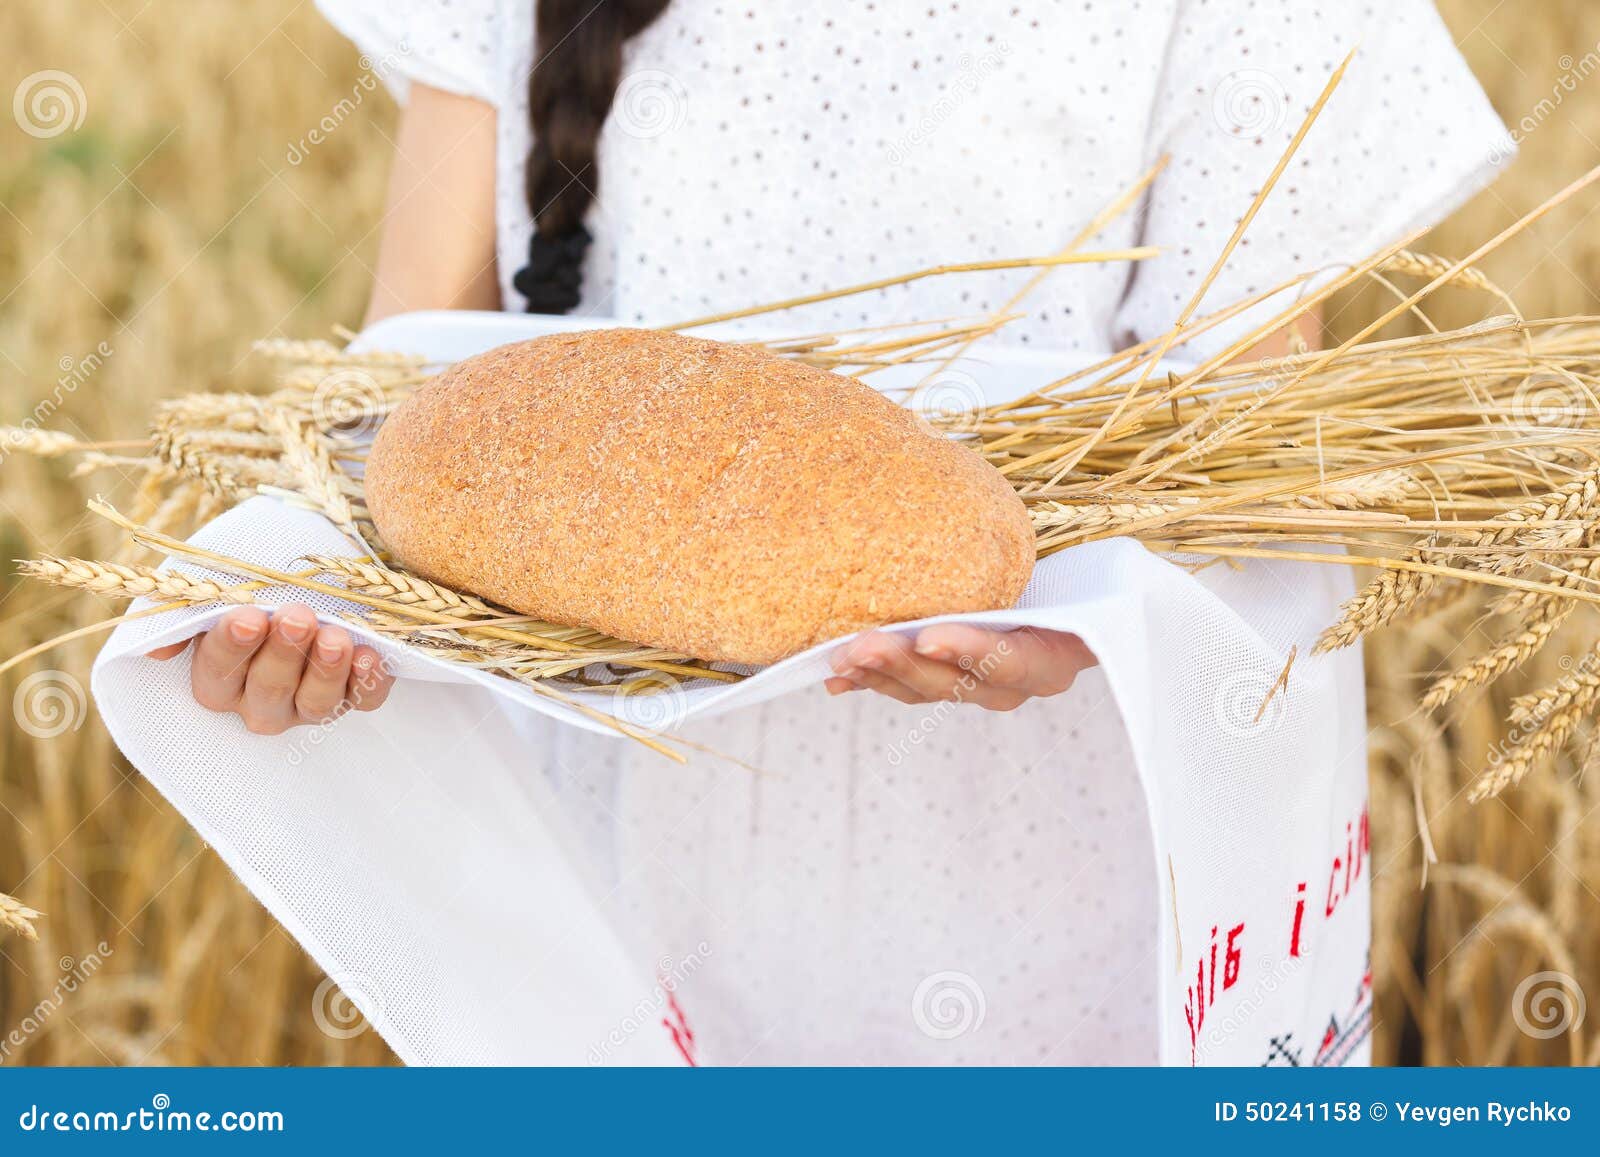 Картинка девушка в пшеничном поле. Несут хлеб в сетке. Девочки в поле несет хлеб рисунки. Человек несет хлеб. Е пшеничный